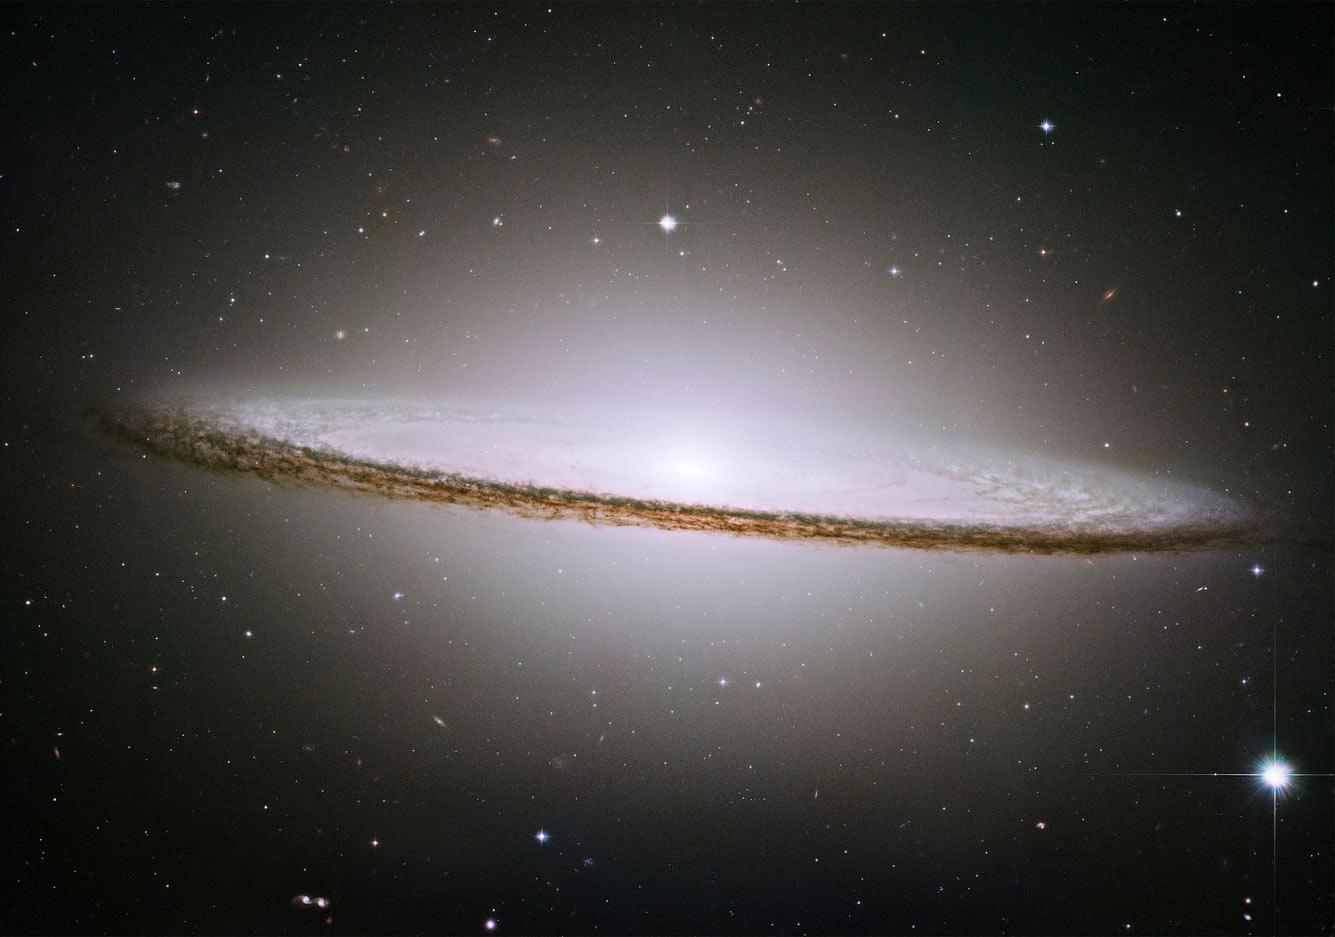 Спиральная галактика Сомбреро